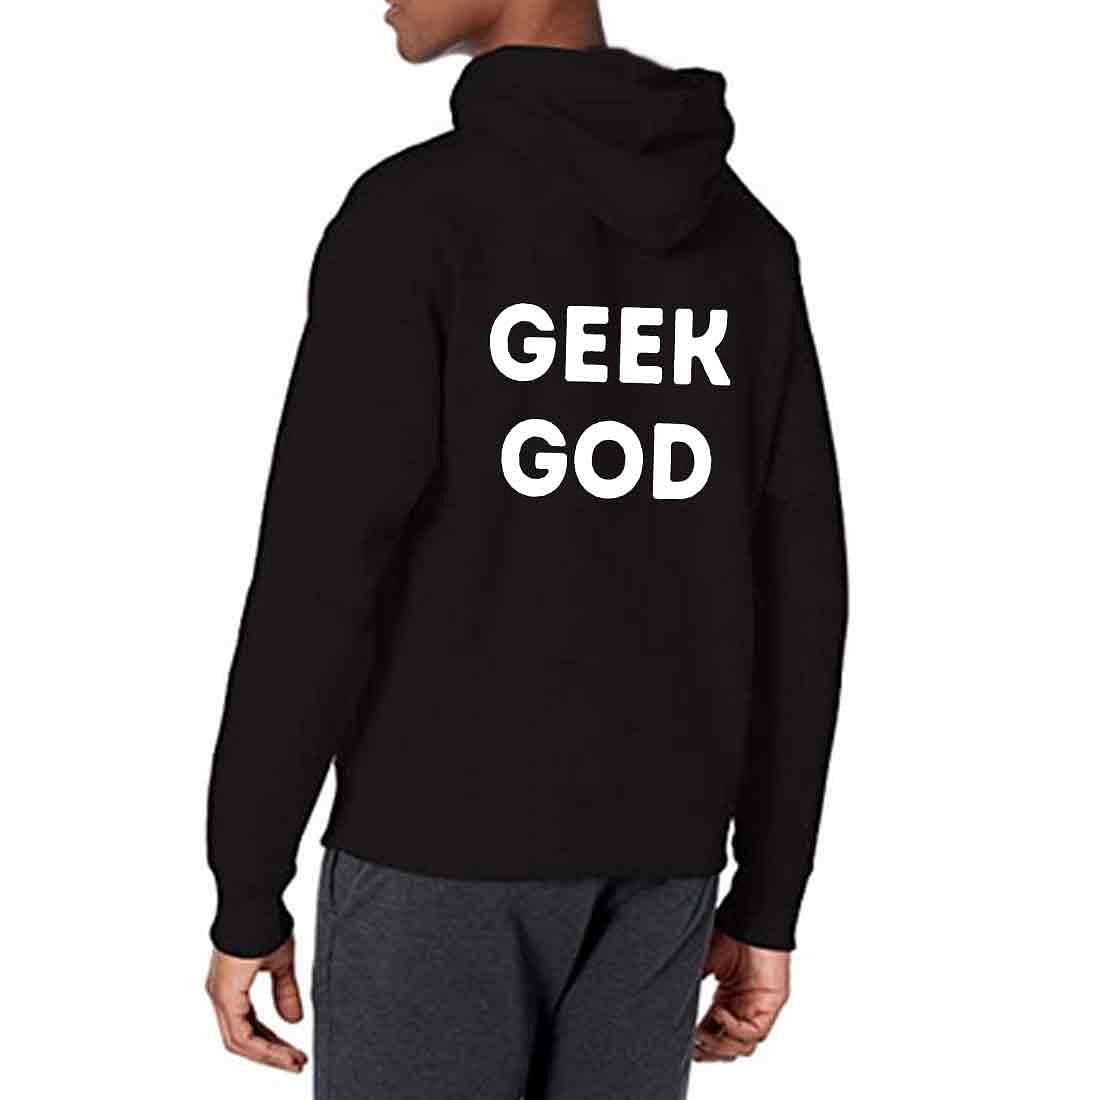 Nutcase Unisex Designer Black Hoodie Men Sweatshirt (Black) - Geek God Nutcase